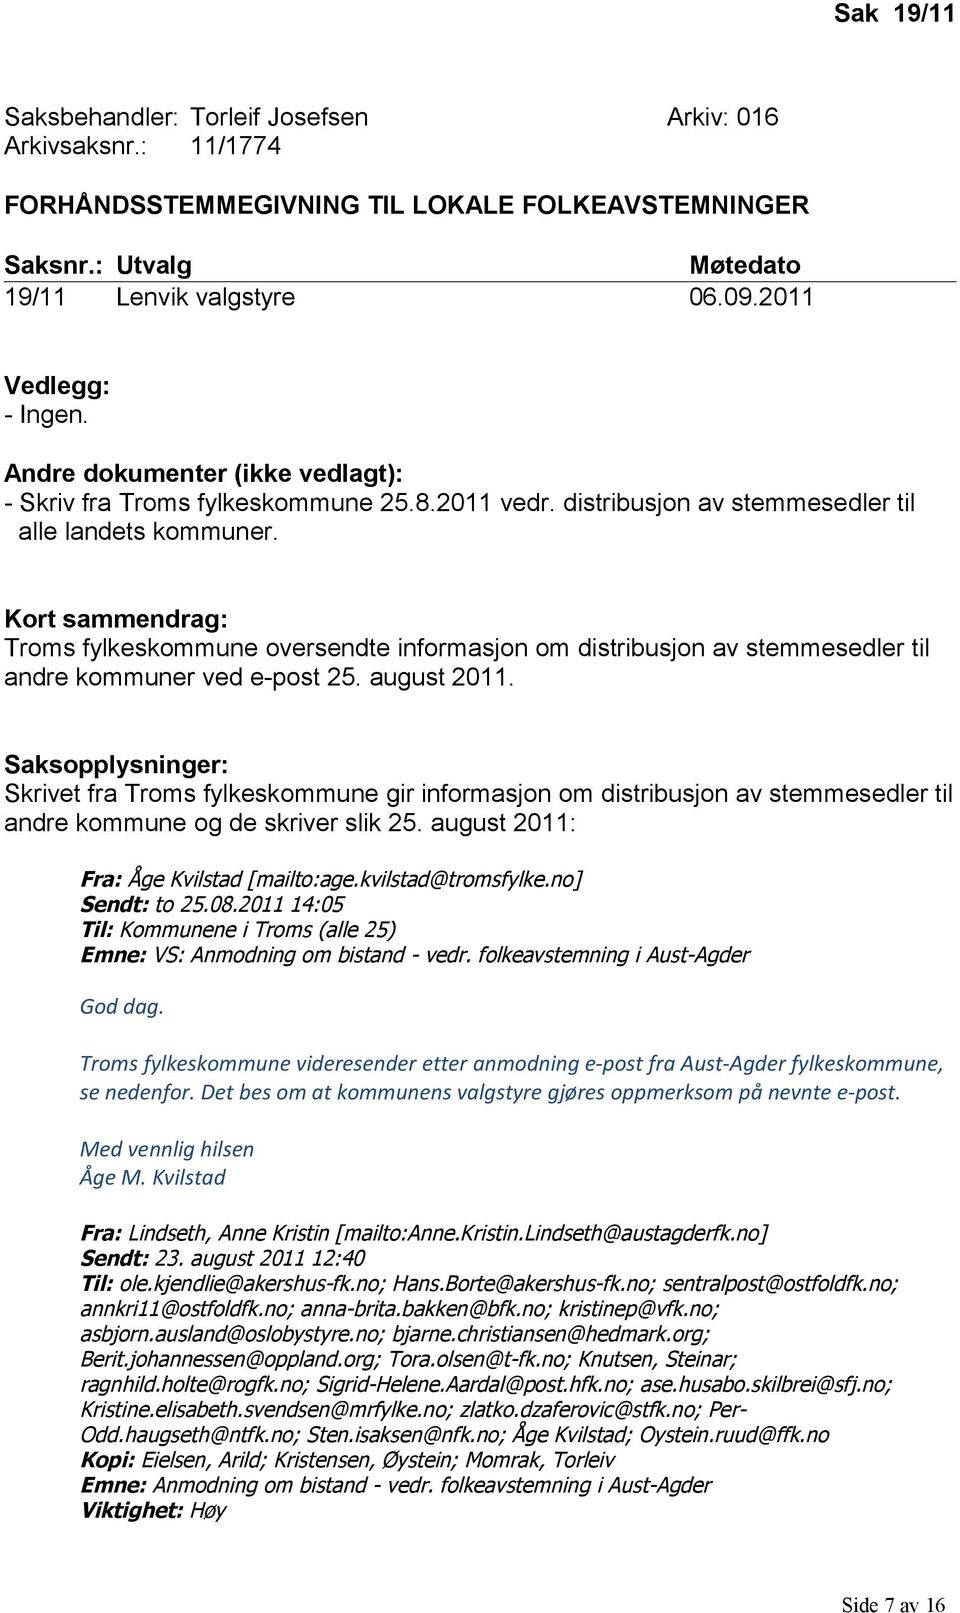 Kort sammendrag: Troms fylkeskommune oversendte informasjon om distribusjon av stemmesedler til andre kommuner ved e-post 25. august 2011.